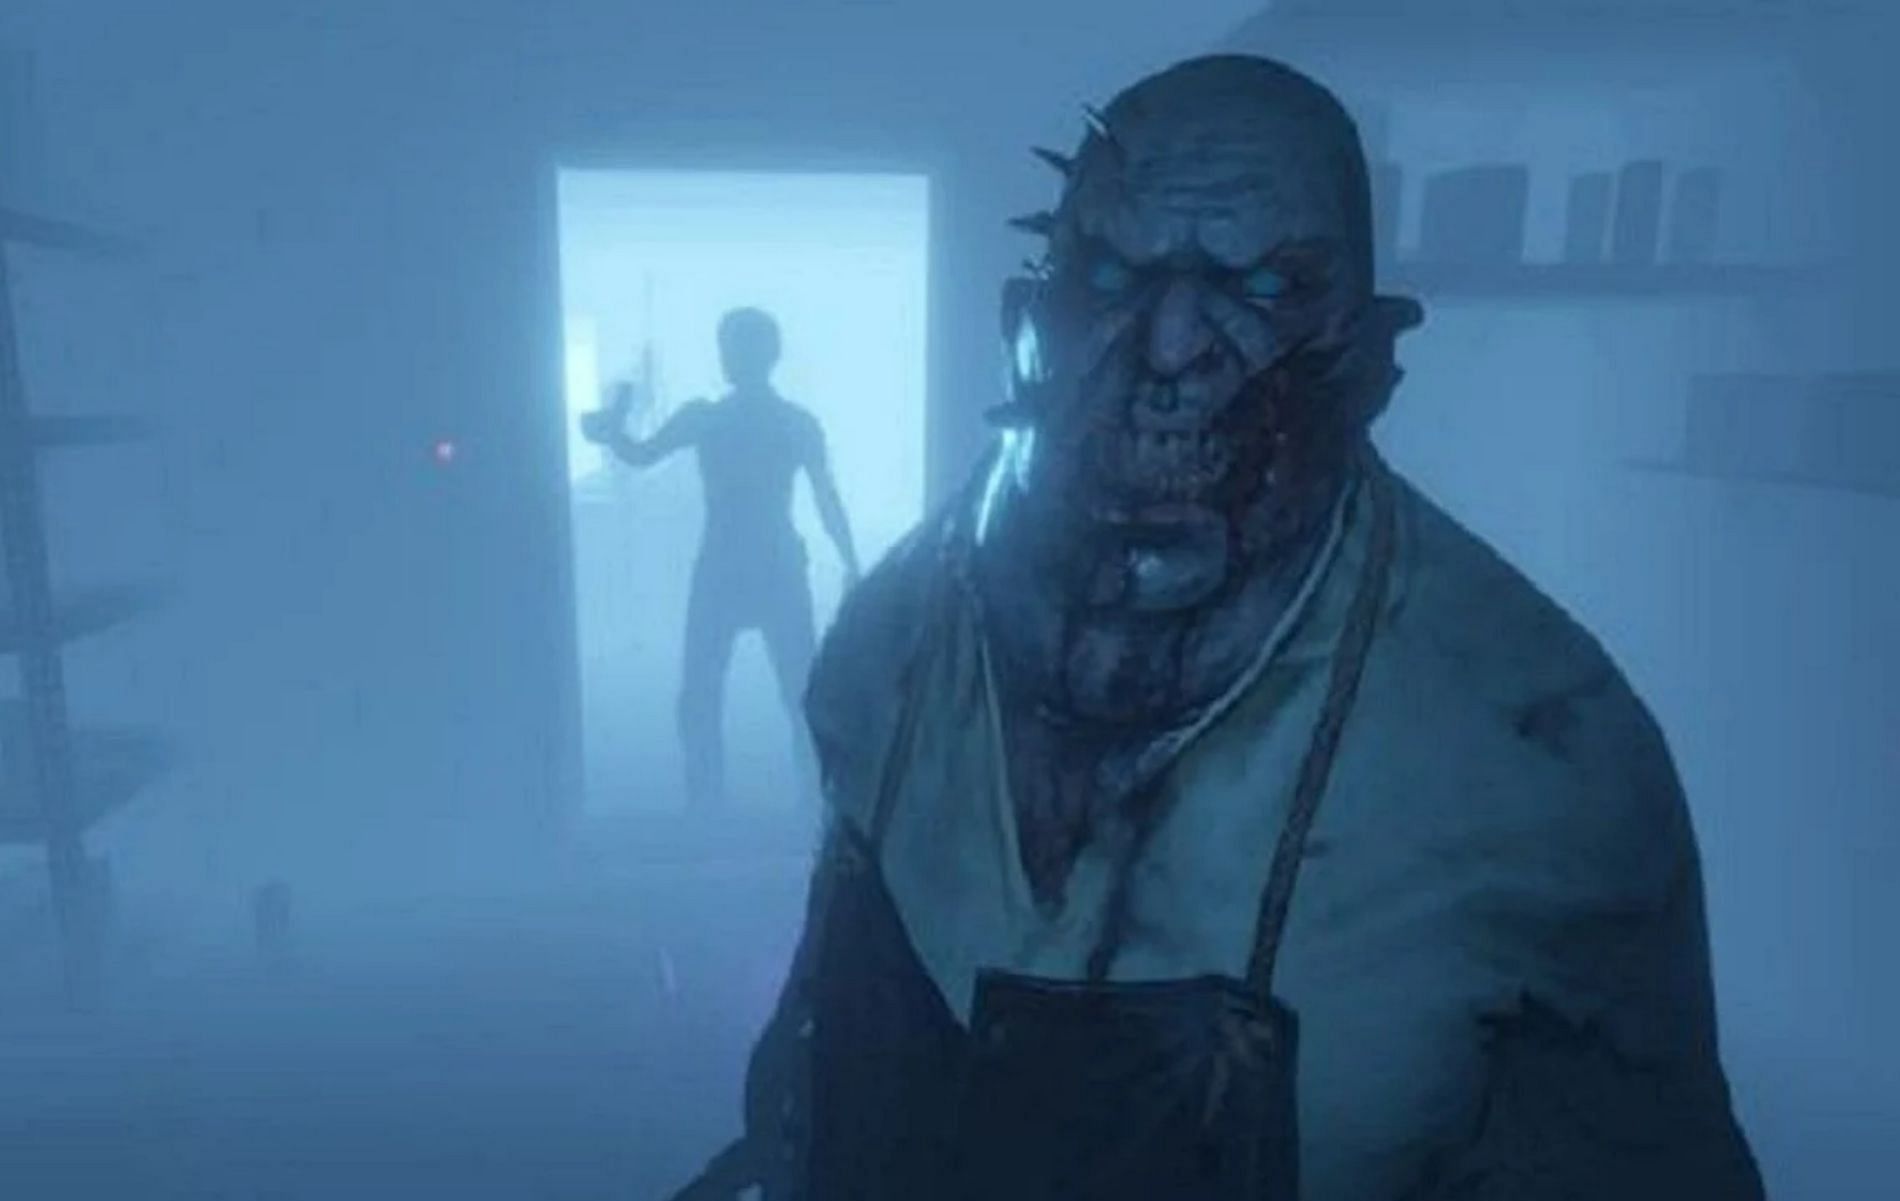 Multiplayer Horror Games Like Phasmophobia On Steam